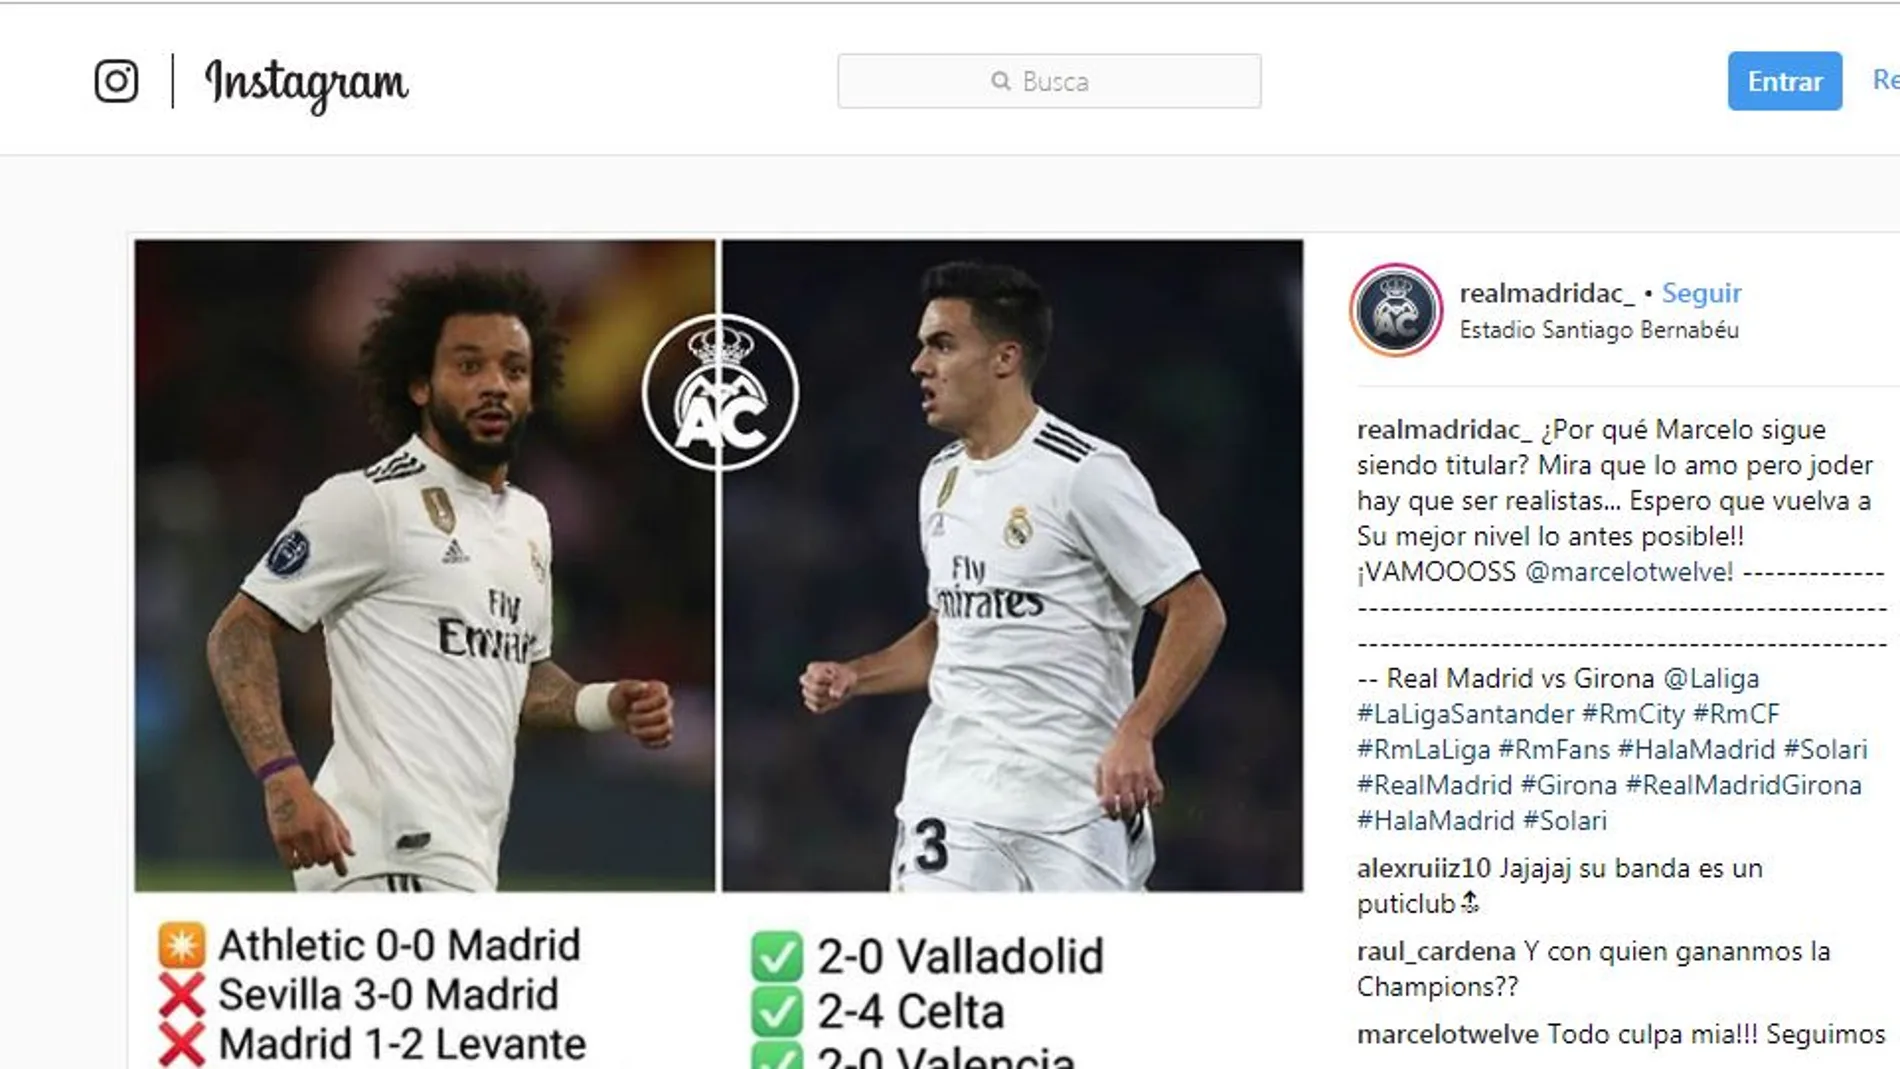 Marcelo se indigna con un mensaje de Instagram: “Todo culpa mía!!! Seguimos”